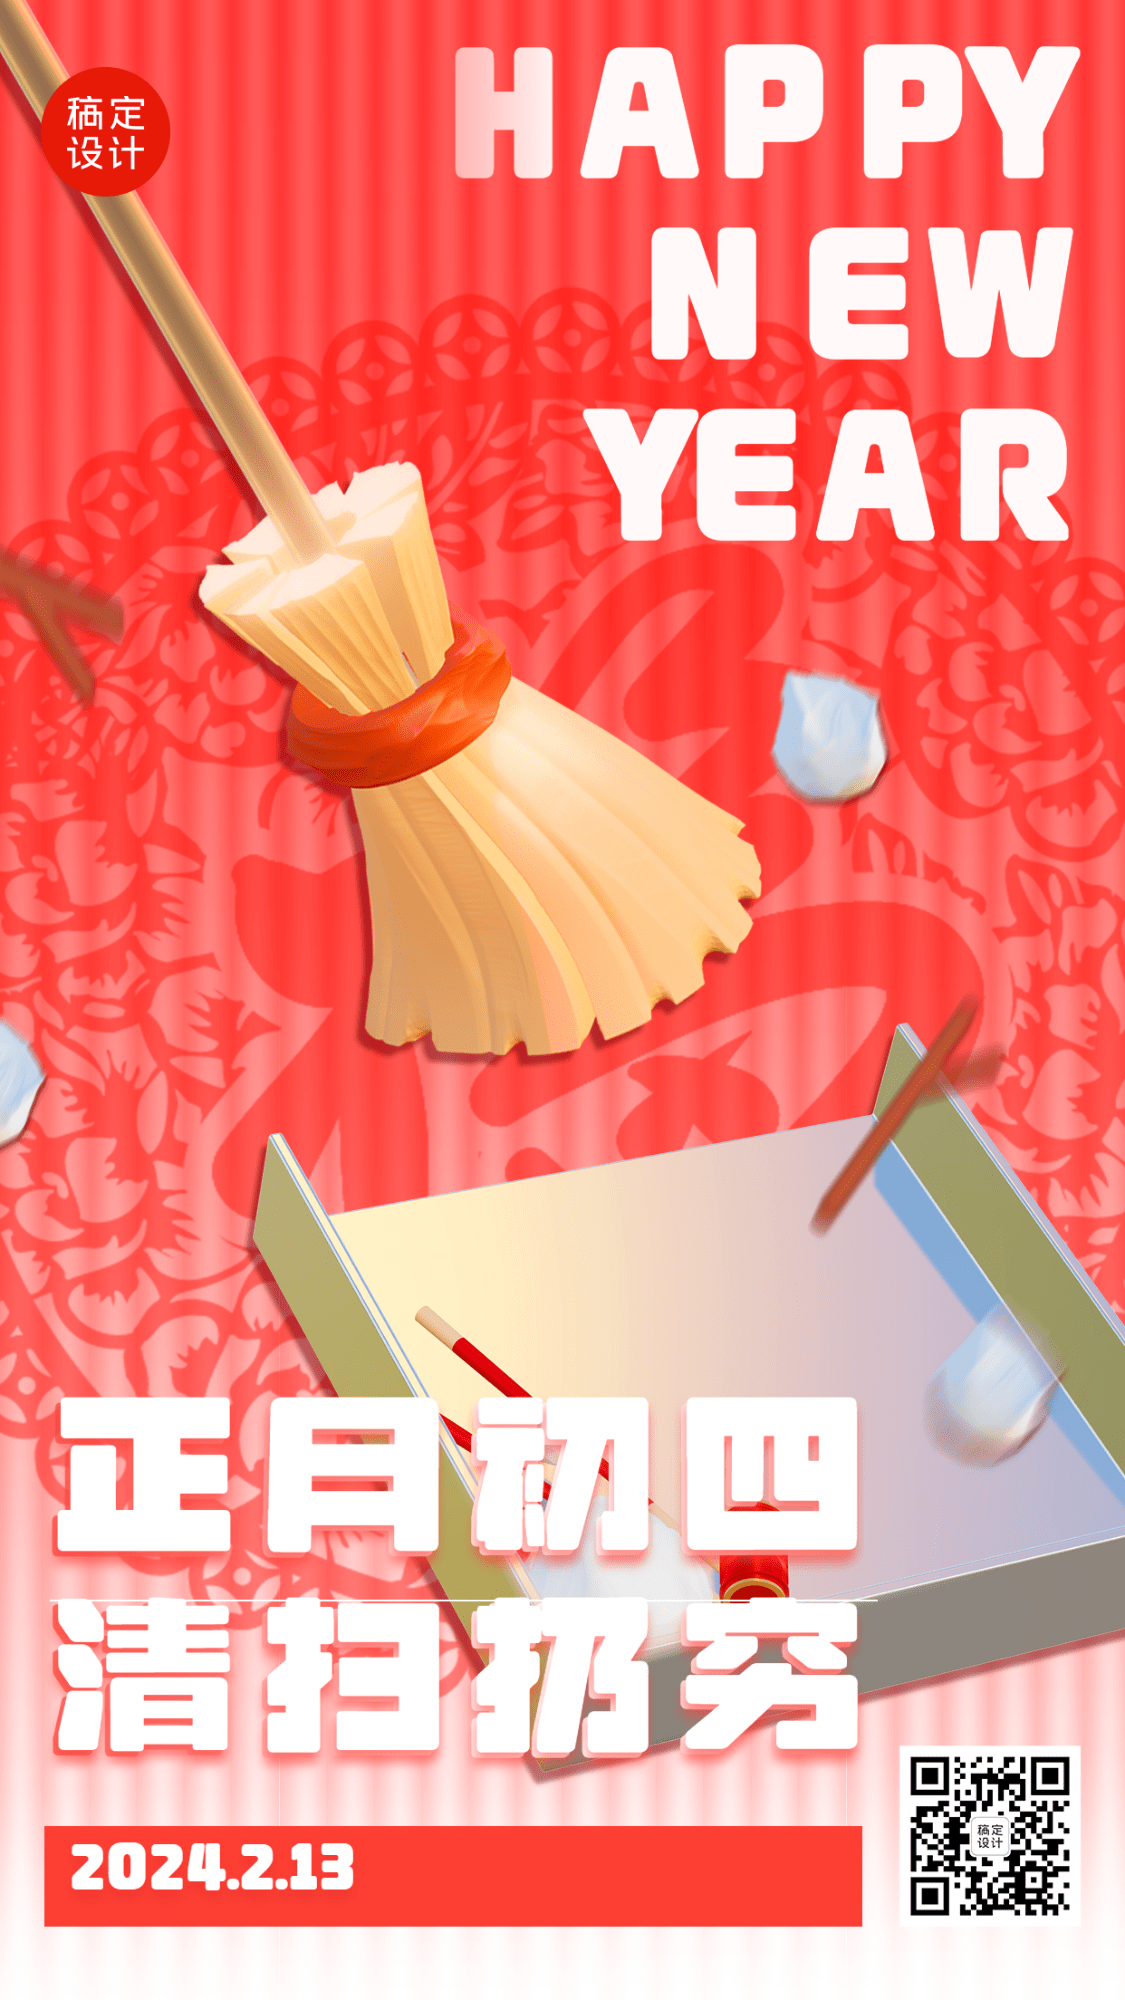 春节正月套系初四清扫扔穷手机海报